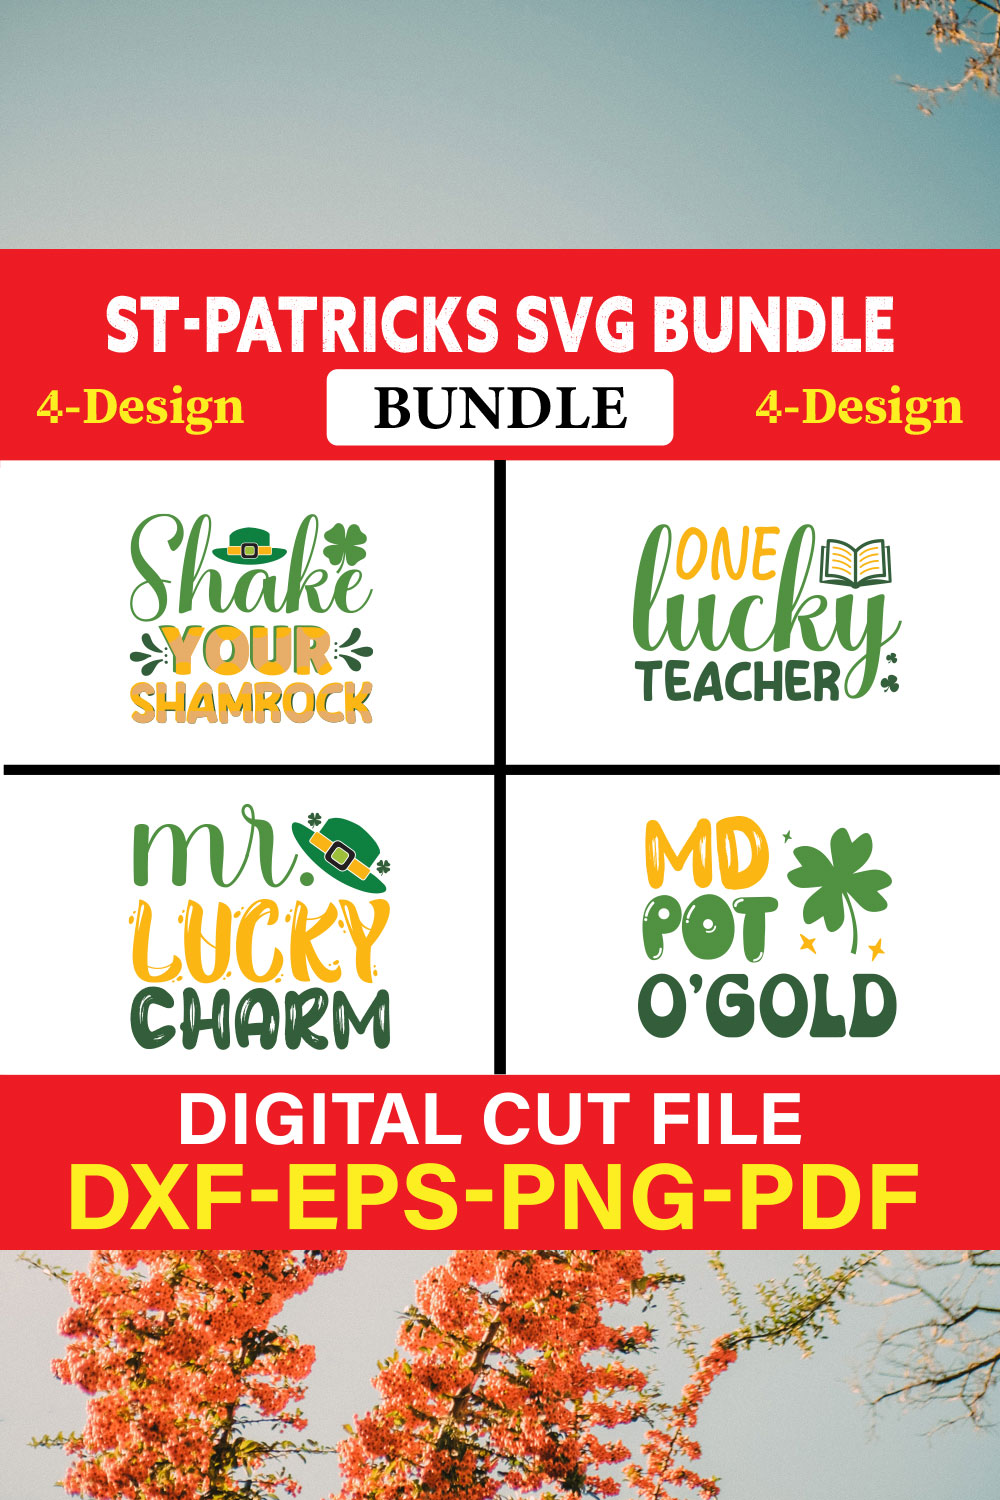 St Patrick's T-shirt Design Bundle Vol-14 pinterest preview image.